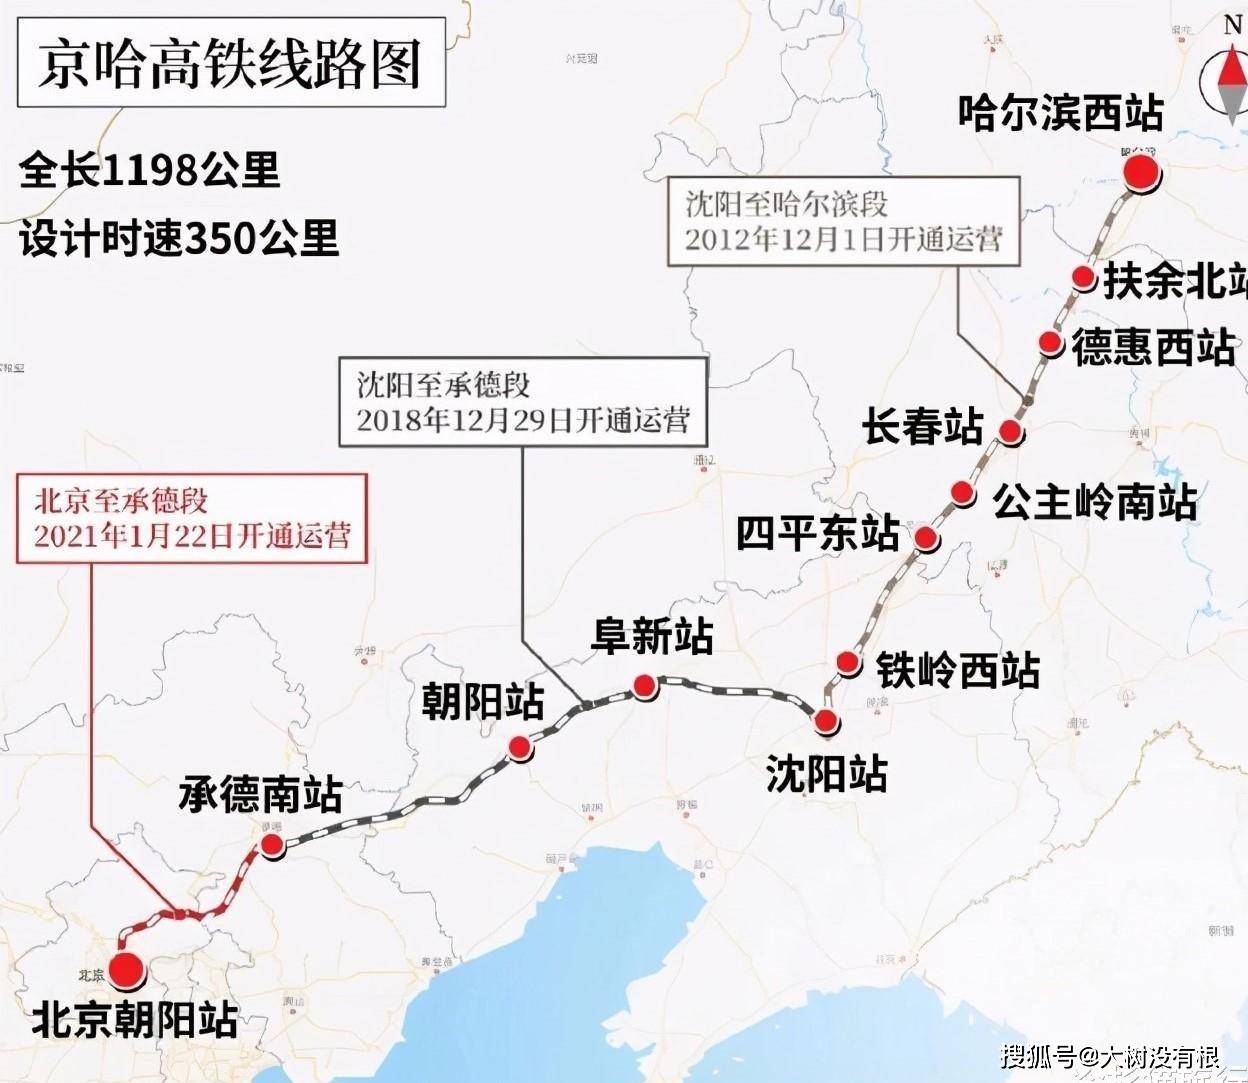 坐着高铁看中国丨京哈高铁全线通车,站站是美景,全程最快只需5h